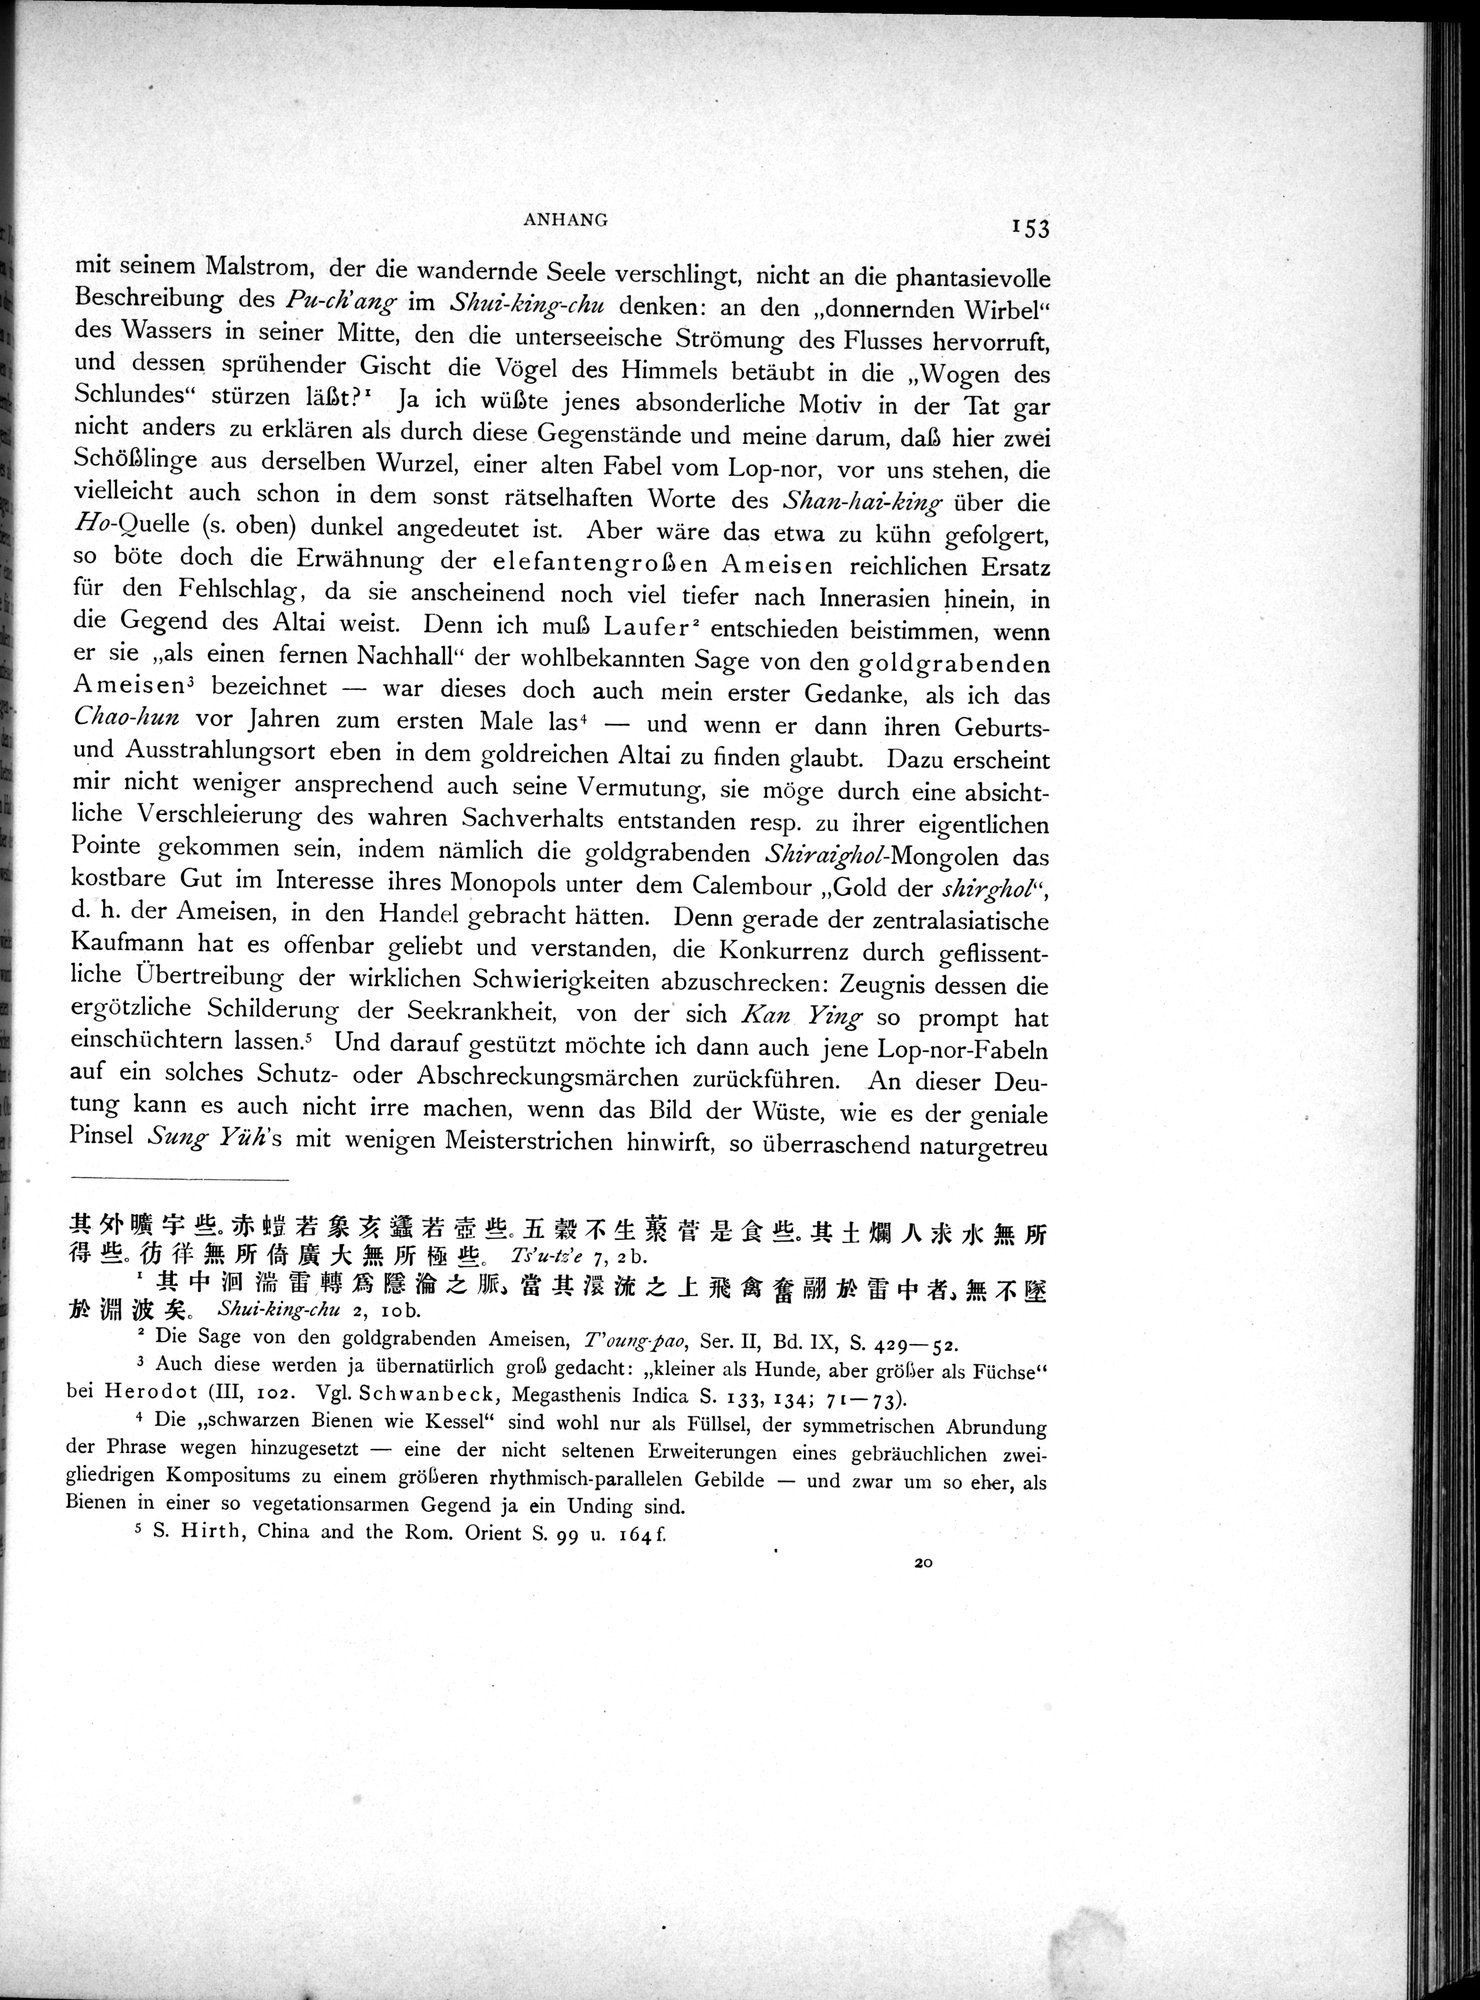 Die Chinesischen Handschriften- und sonstigen Kleinfunde Sven Hedins in Lou-lan : vol.1 / Page 177 (Grayscale High Resolution Image)